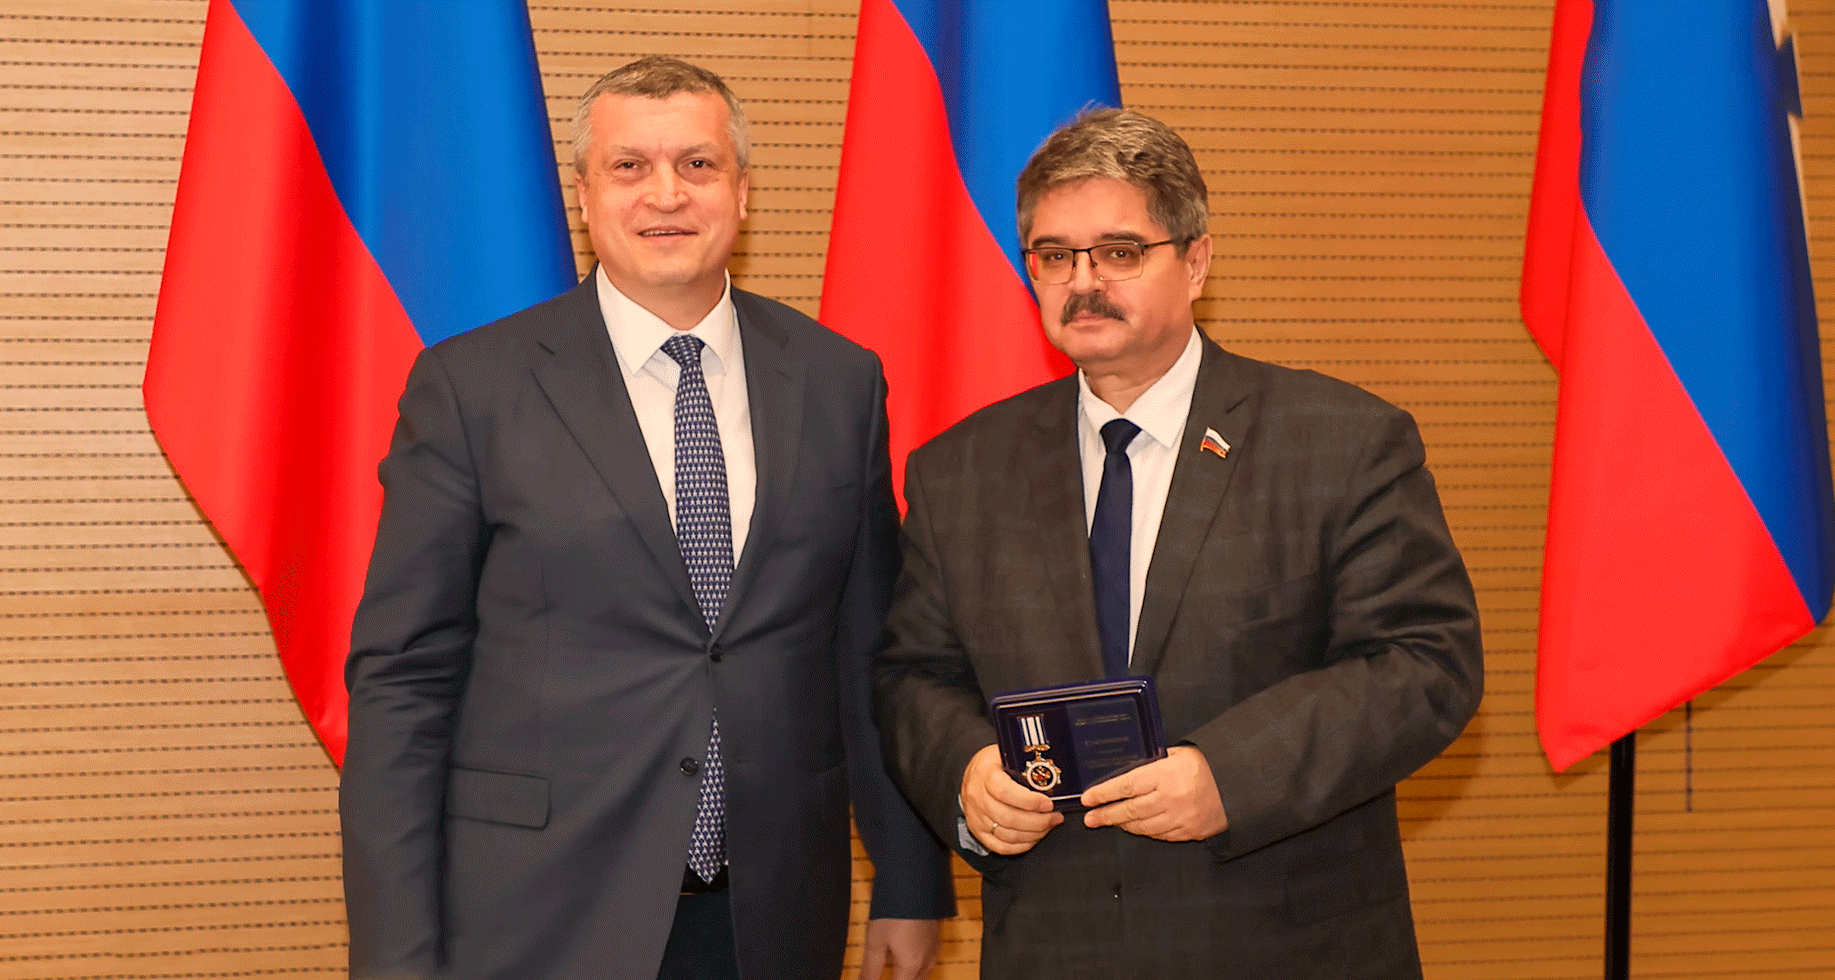 Сенатор Анатолий Широков награжден знаком “За заслуги в развитии Дальнего Востока”